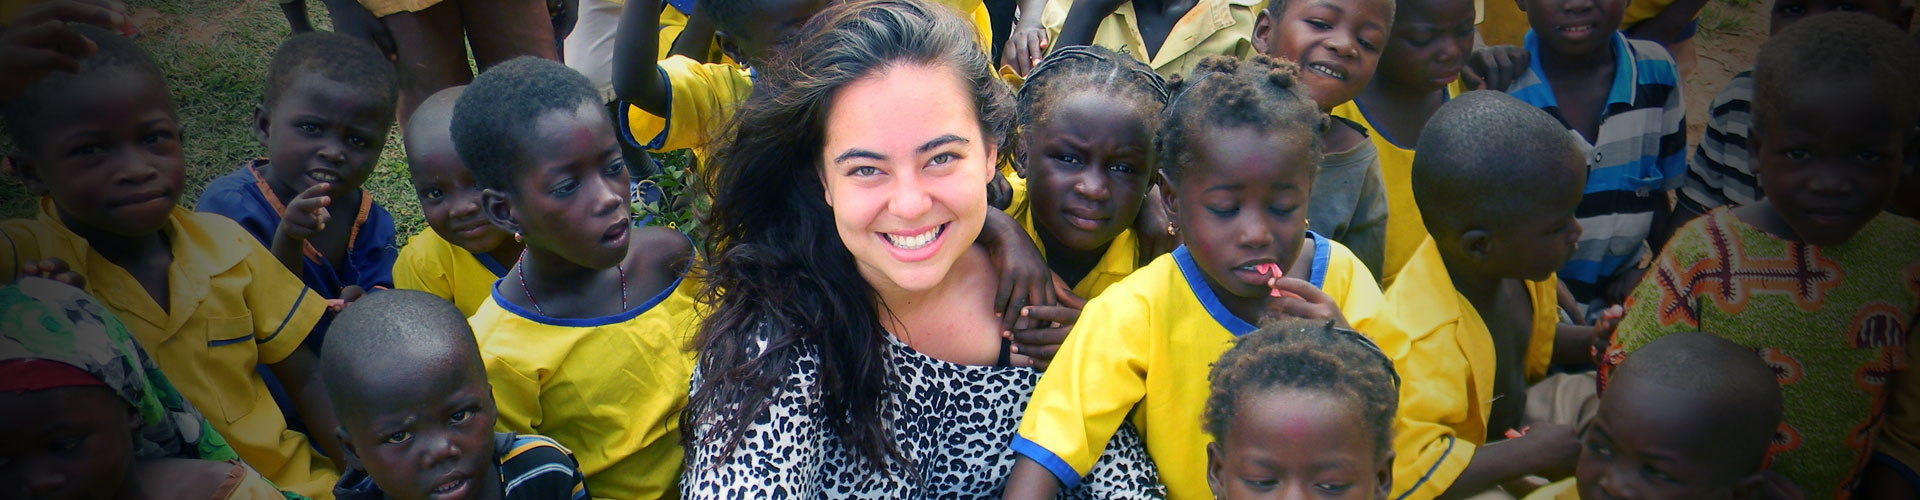 Programa de voluntariado para orfanatos em Gana